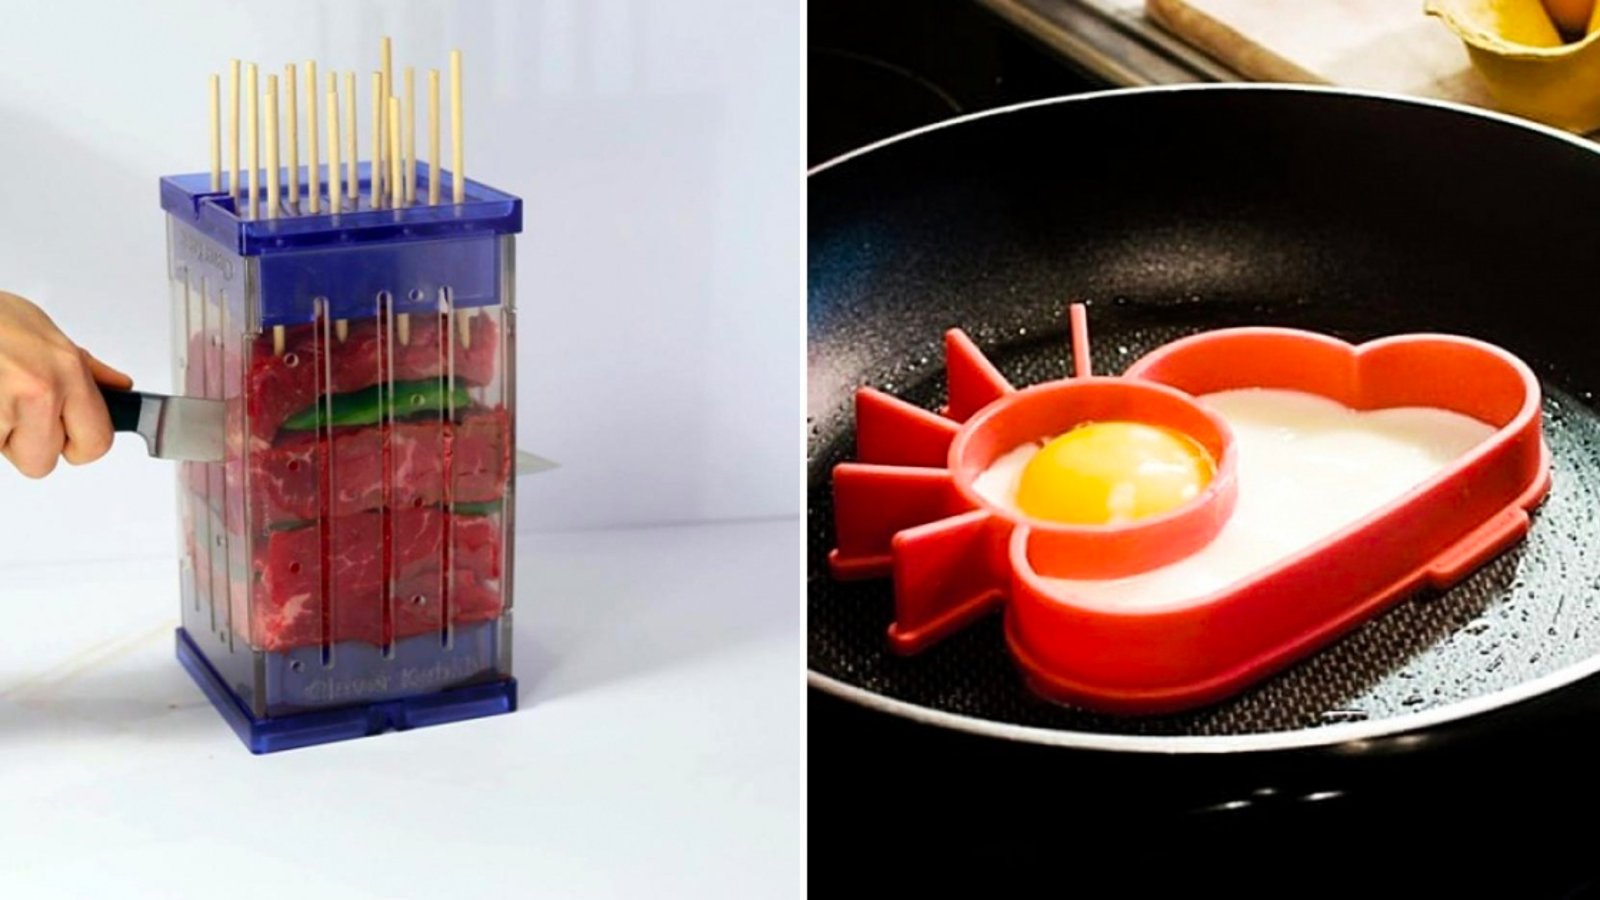 Voici 5 gadgets très utiles en cuisine que l'on retrouve à petit